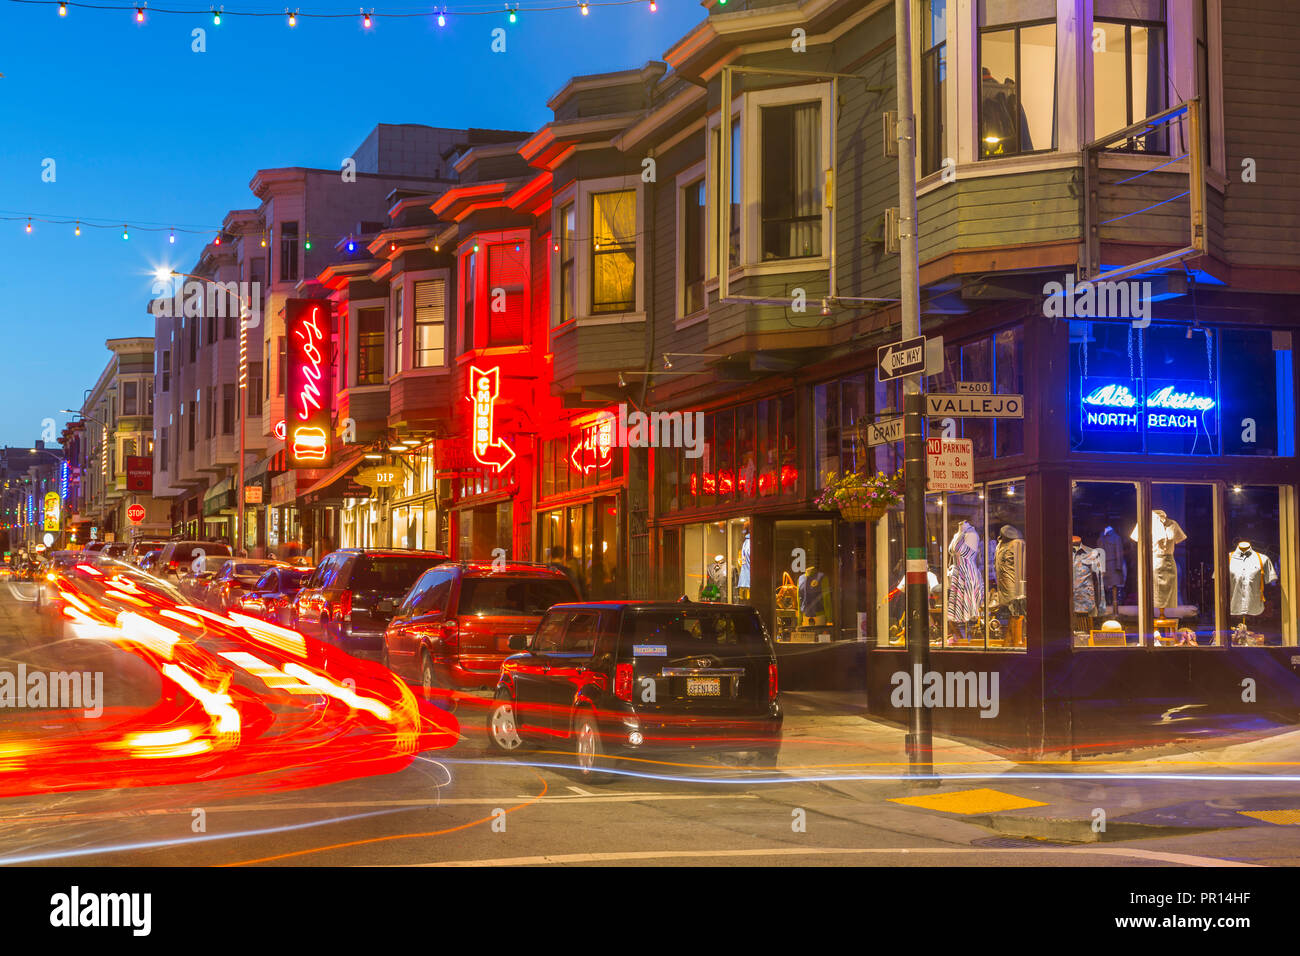 Club Zeichen und Geschäfte im North Beach District, San Francisco, Kalifornien, Vereinigte Staaten von Amerika, Nordamerika Stockfoto